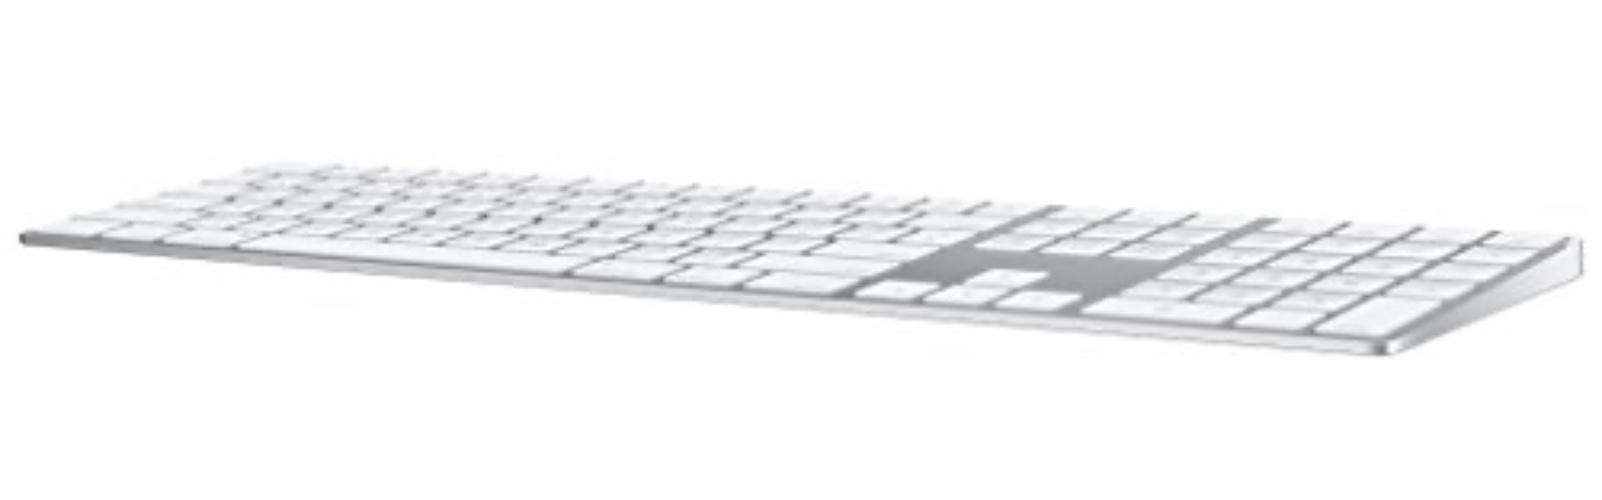 Apple Teclado Magic Keyboard con teclado numérico: recargable, con conexión Bluetooth y compatible con el Mac, iPad y iPhone. Español, Plata - Plata